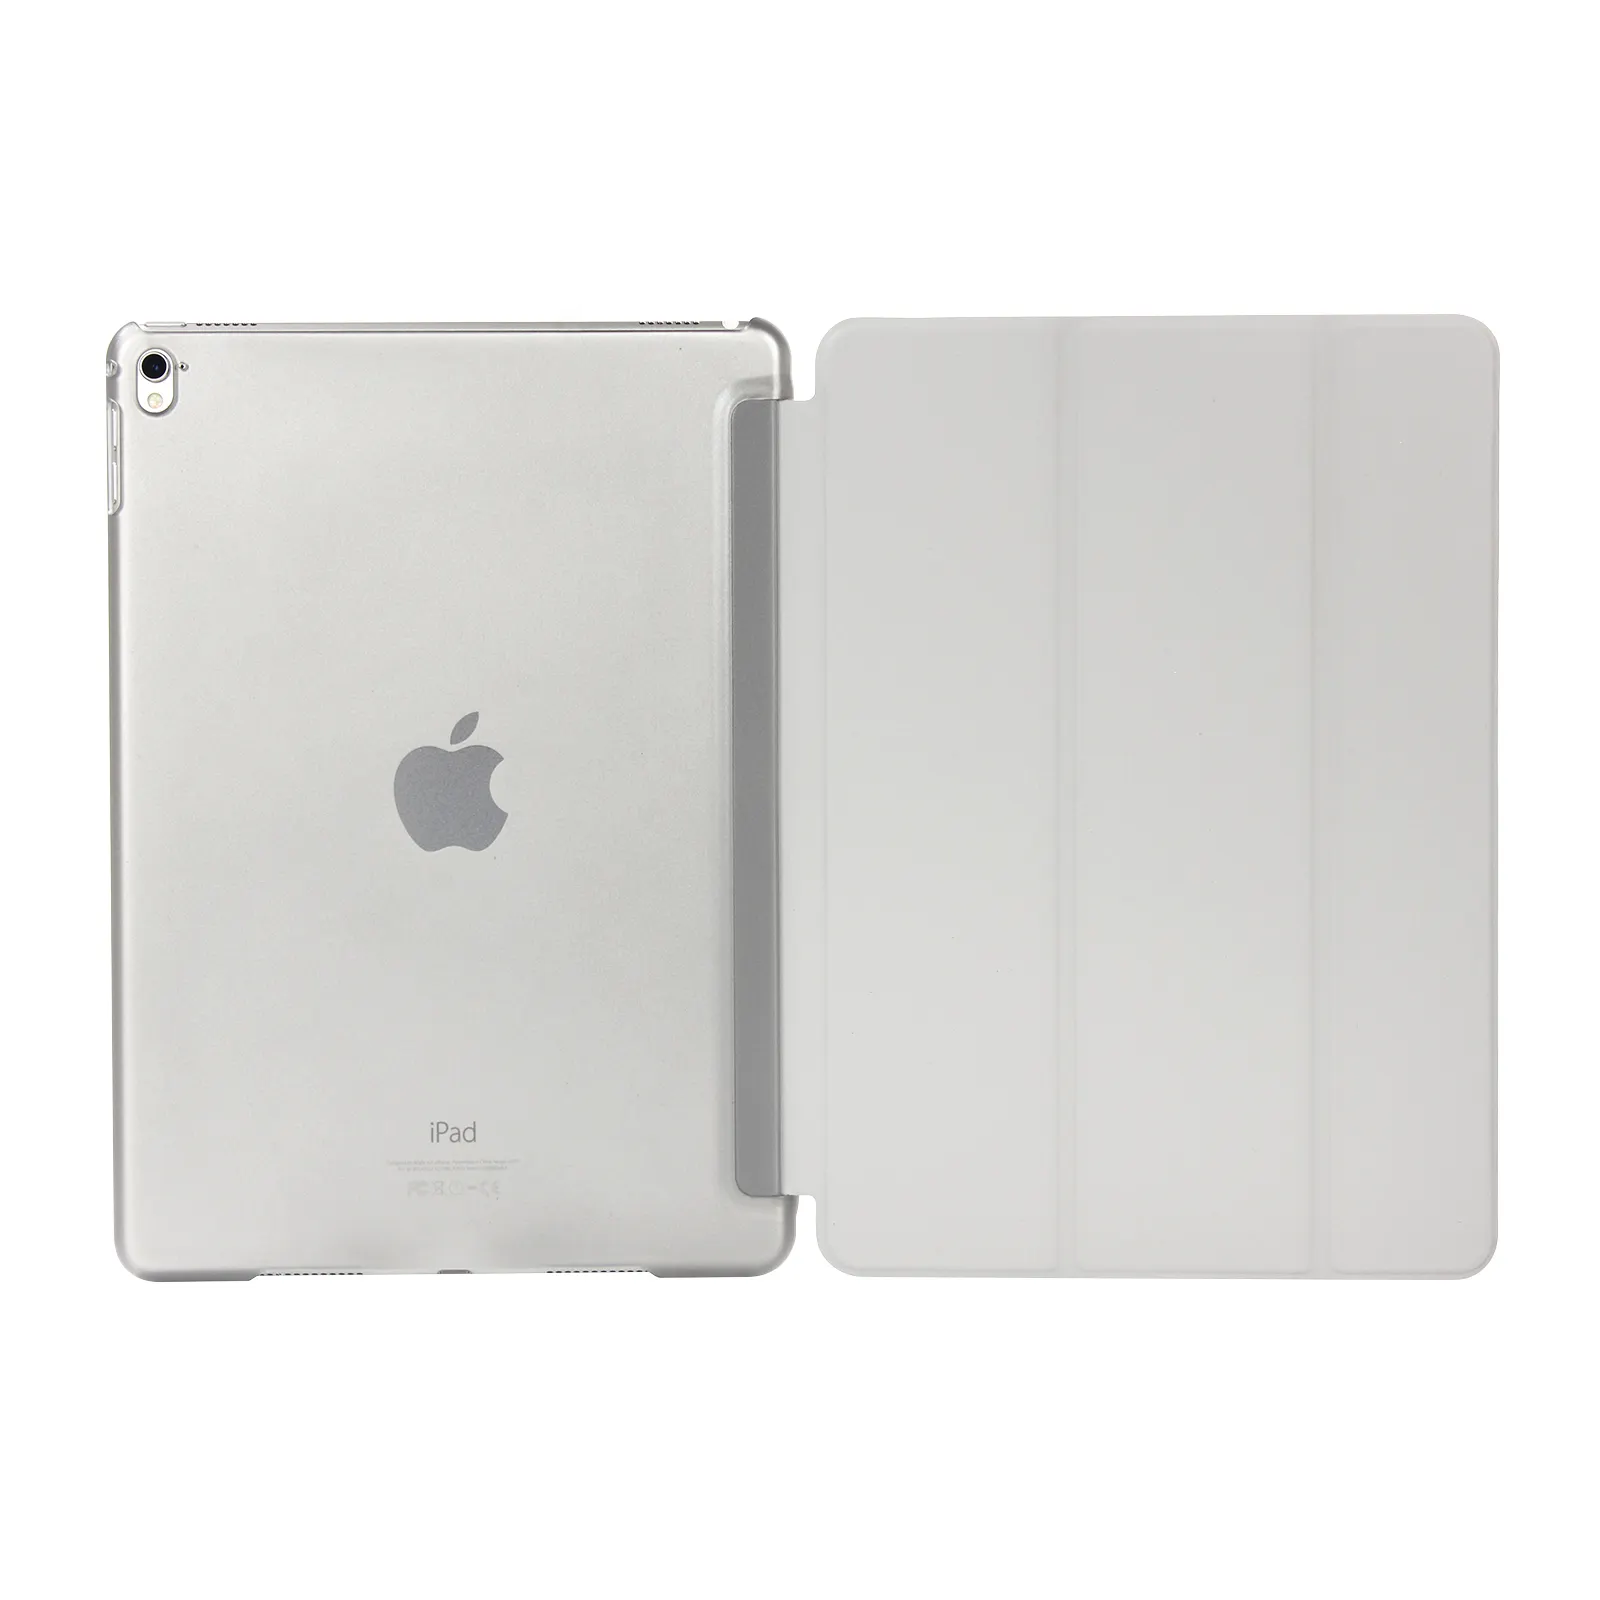 BEECONS transparenter Soft Case-Schutz gegen Luft für iPad air 1 für iPad air 2